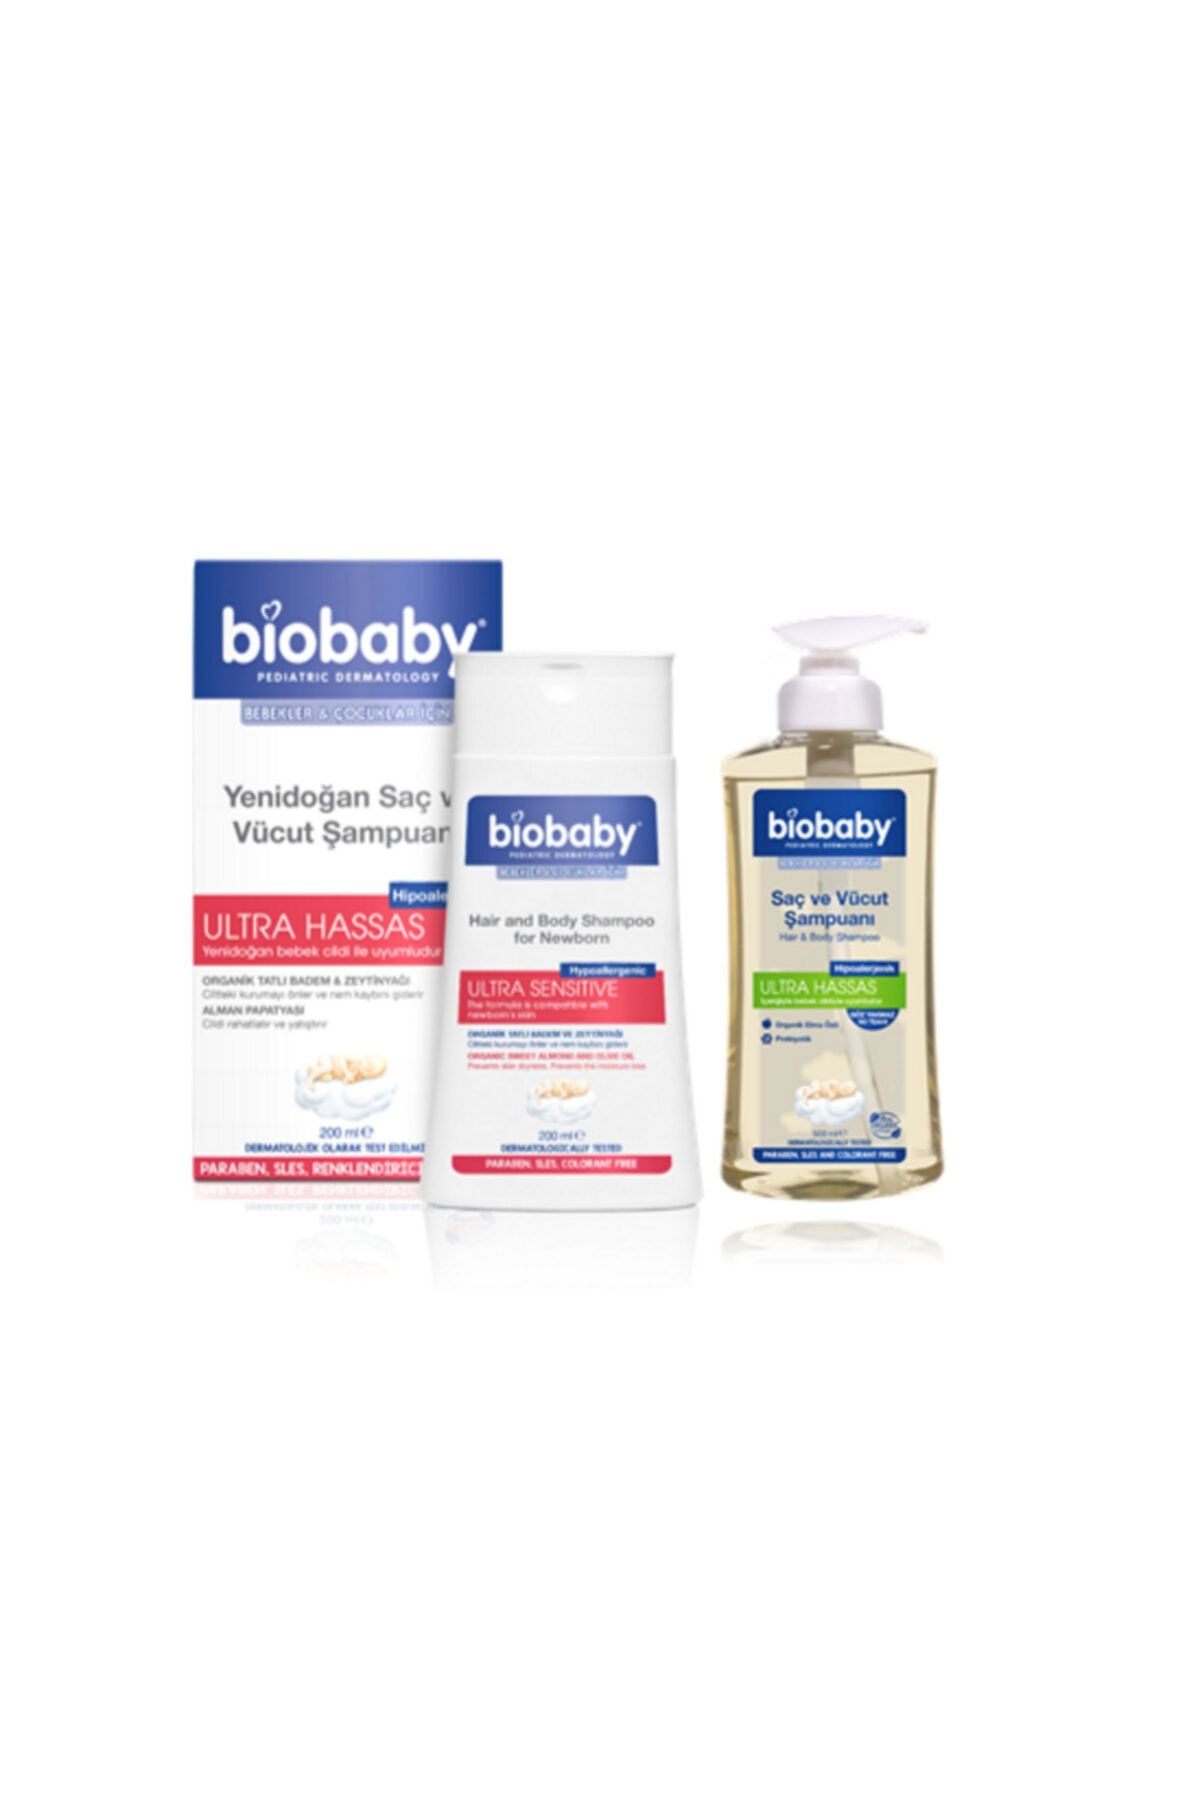 Biobaby Yenidoğan Saç Ve Vücut Şampuanı 200 ml+ Bıobaby Saç Ve Vücut Şampuanı-500 ml Set